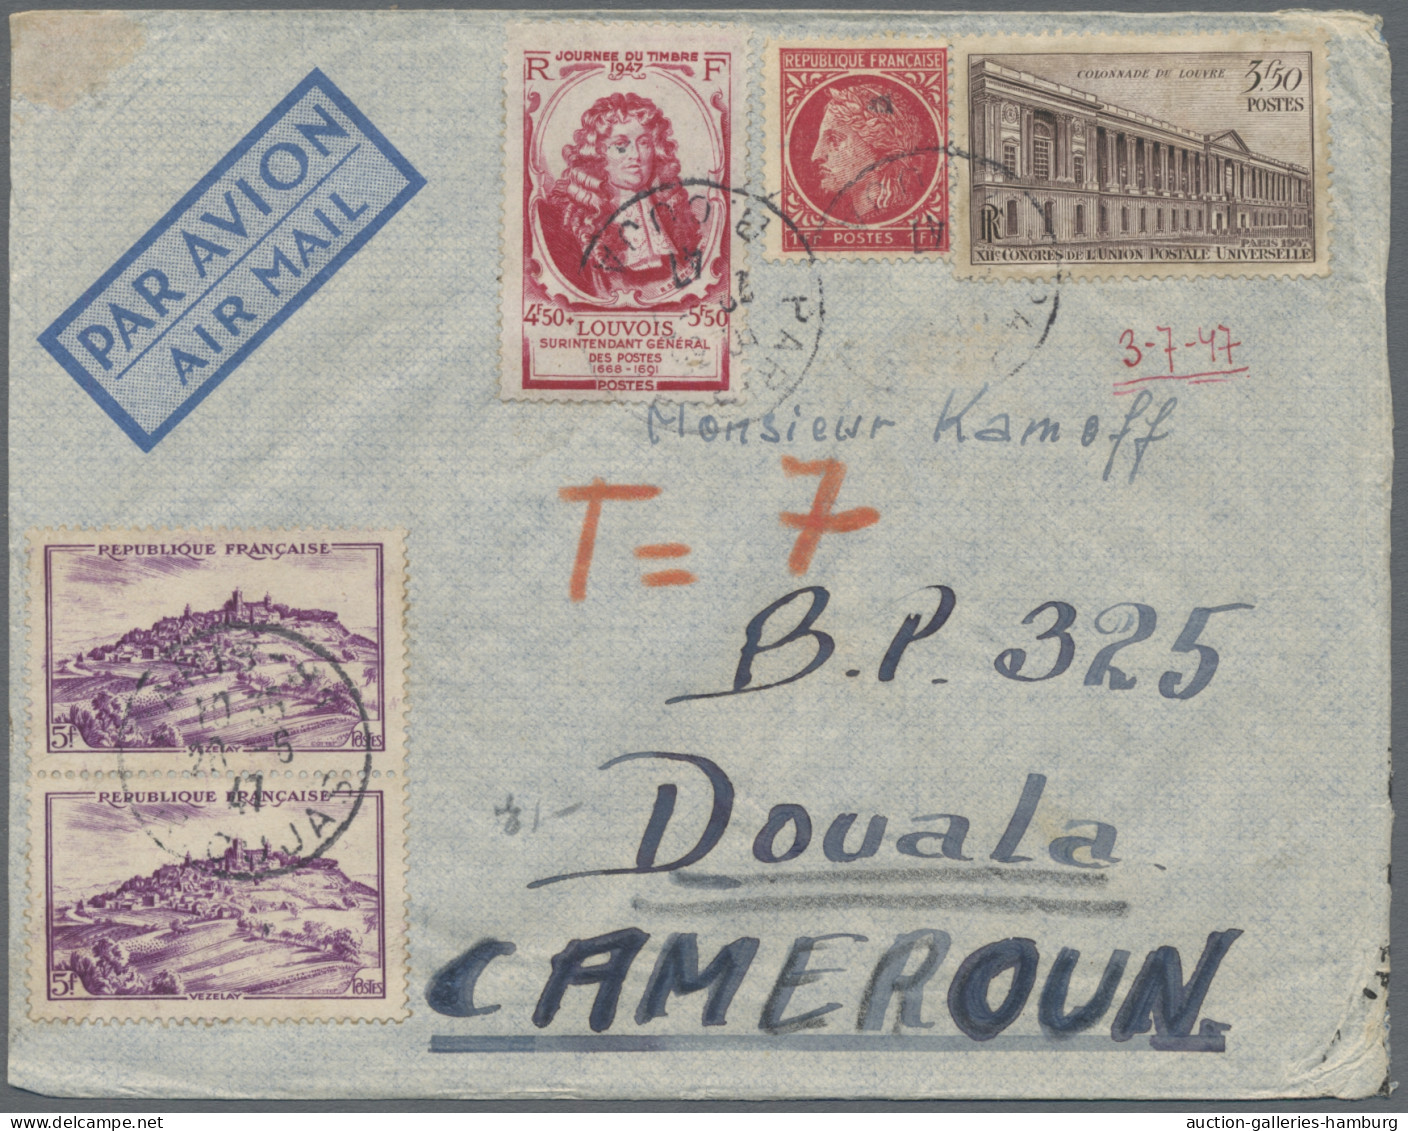 France: 1946-1961, ca. 150 Luftpostbriefe aus Frankreich an eine Adresse in Dual